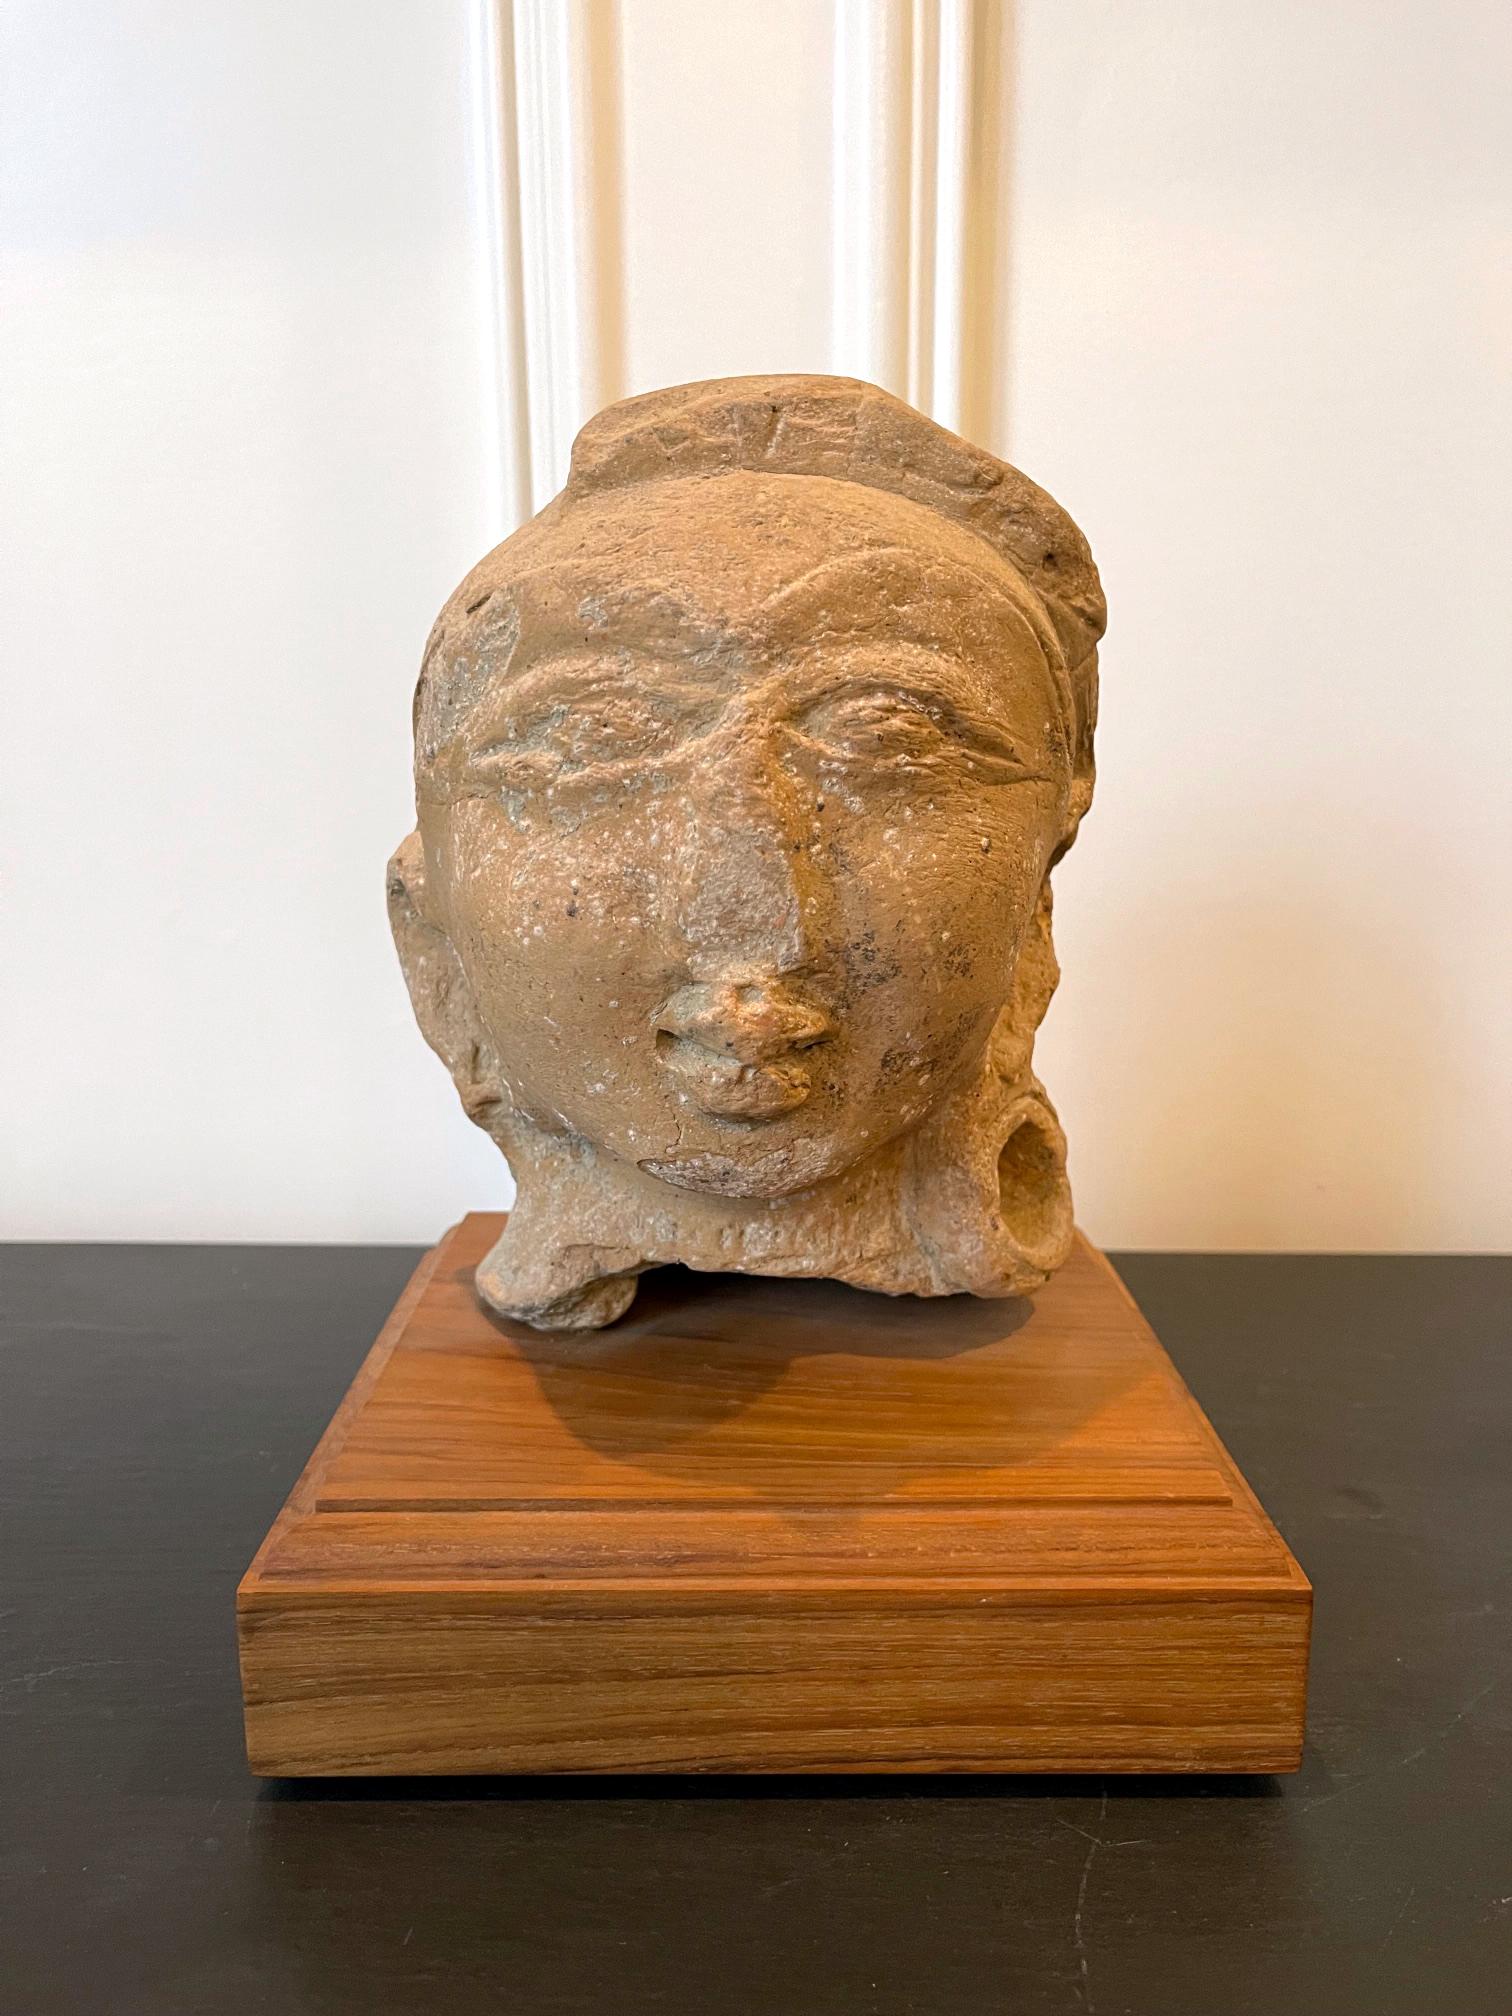 Frammento di statua in terracotta su supporto in legno proveniente dall'antico continente indiano e datato al periodo Gupta (IV-VI secolo). La testa della divinità è stata realizzata con argilla modellata e cotta a bassa temperatura e probabilmente